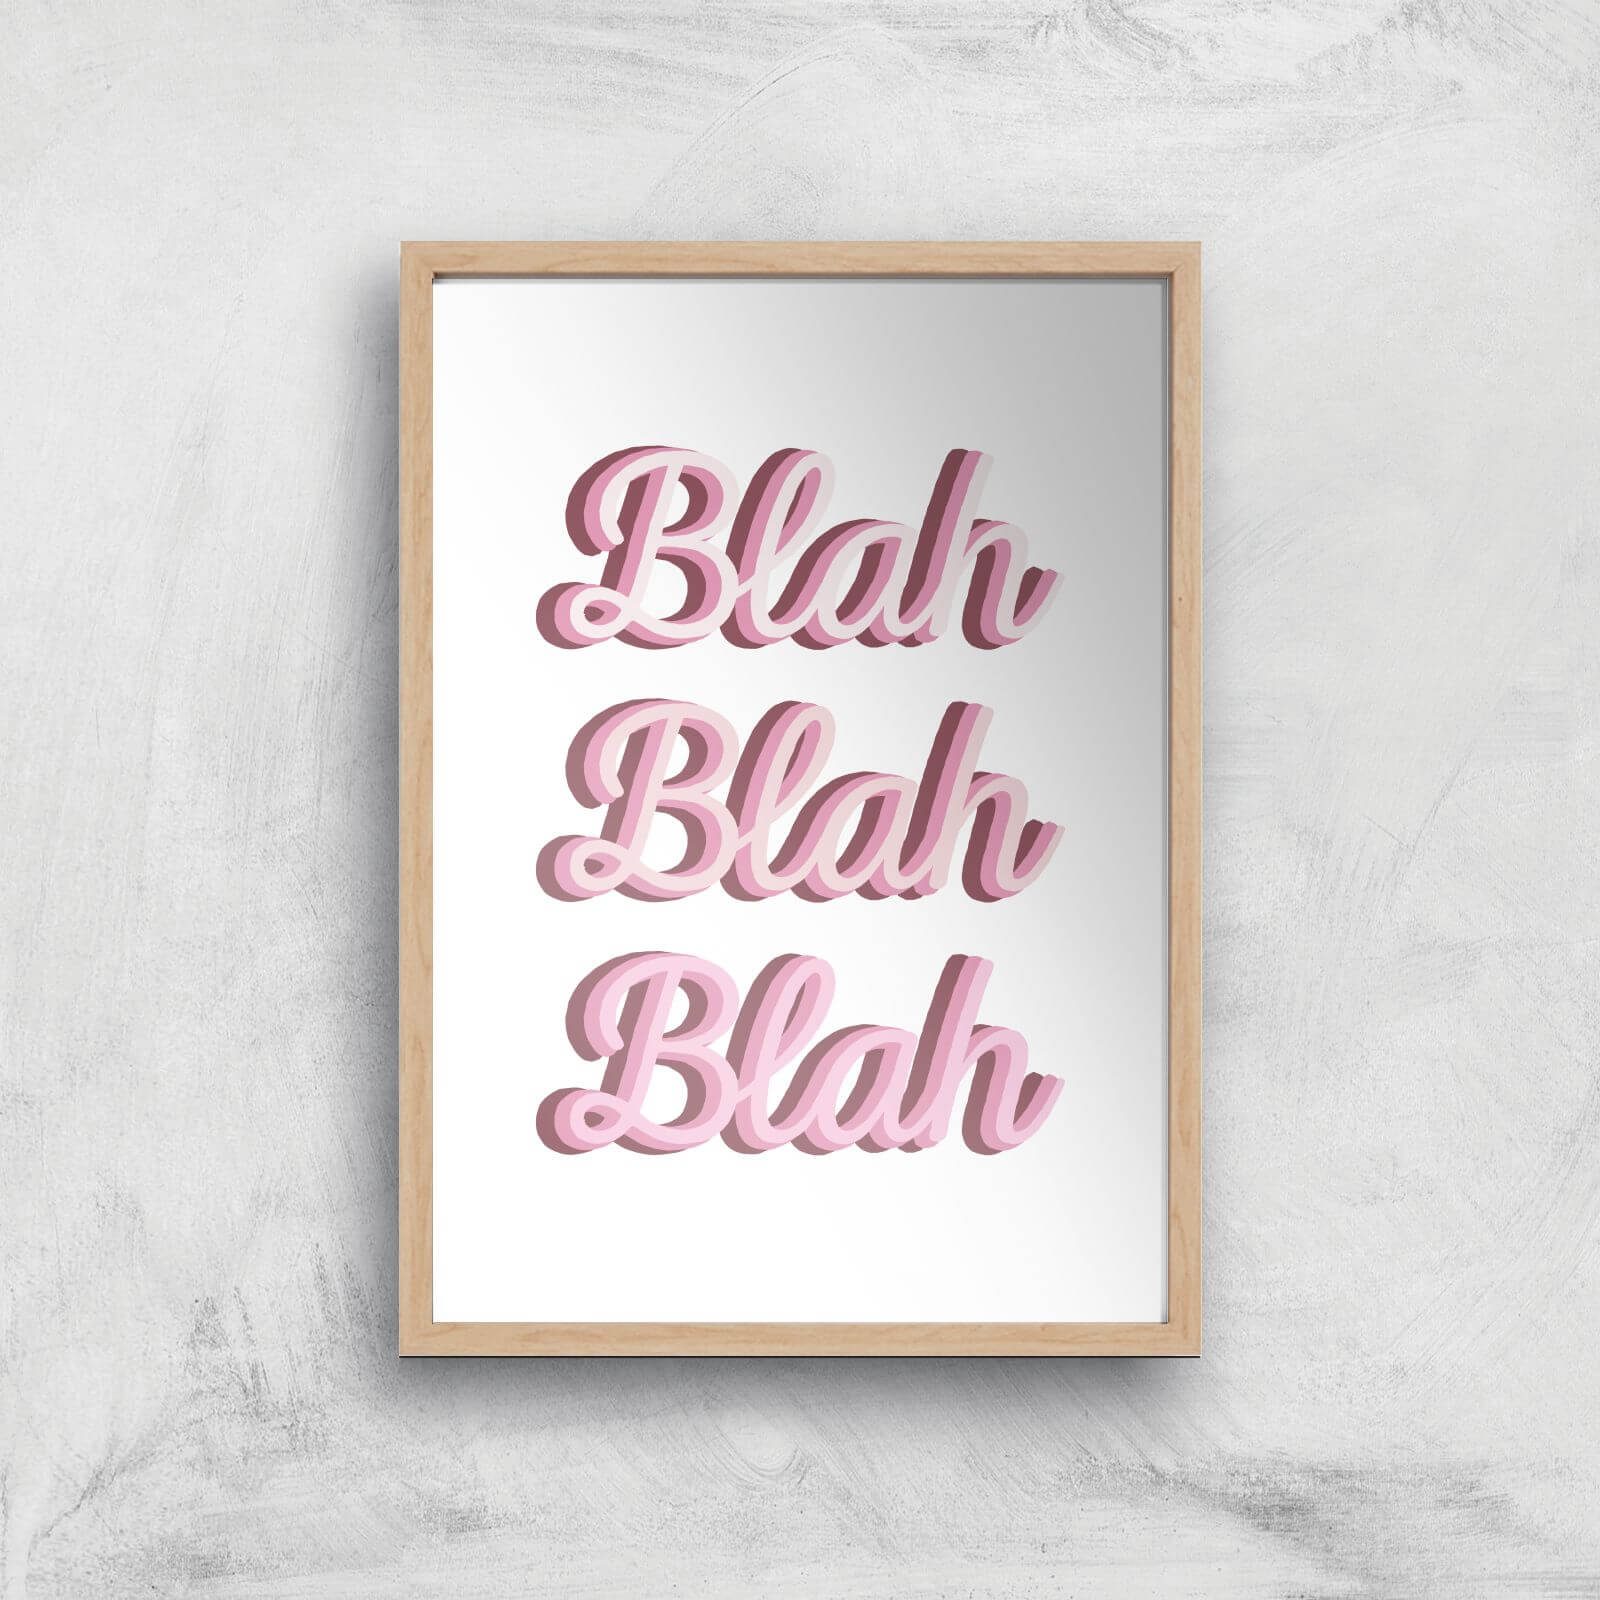 Blah Blah Blah Giclée Art Print - A2 - Wooden Frame